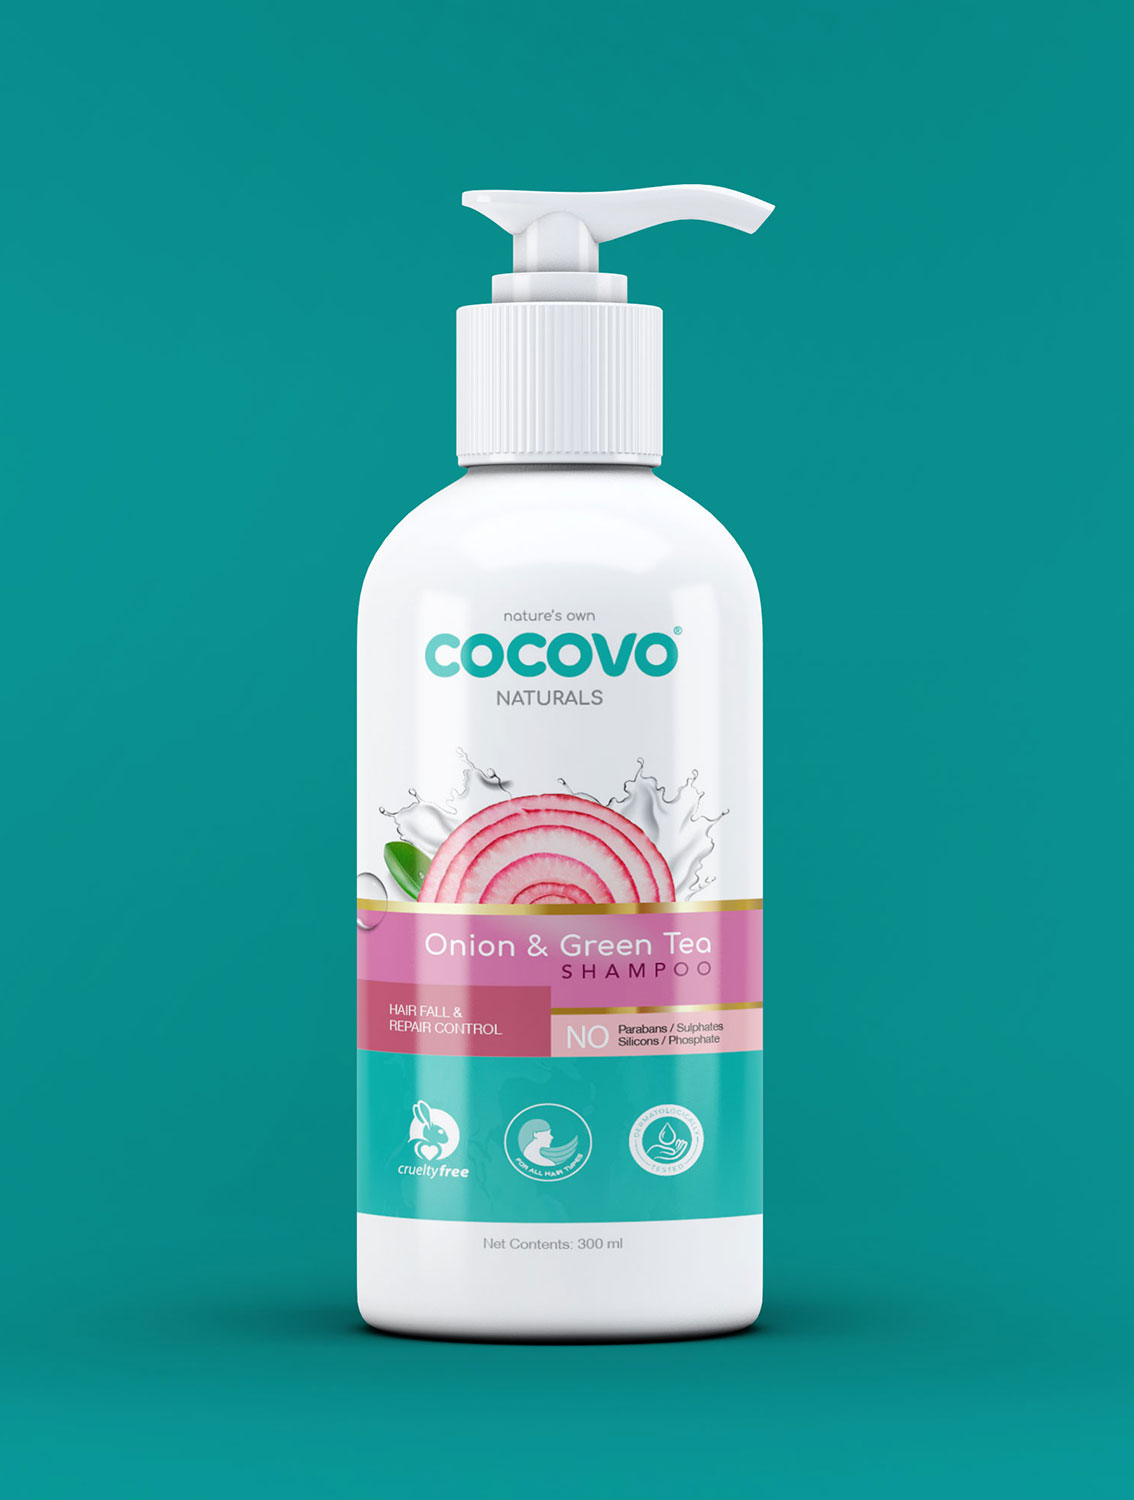 natural shampoo bottle packaging design